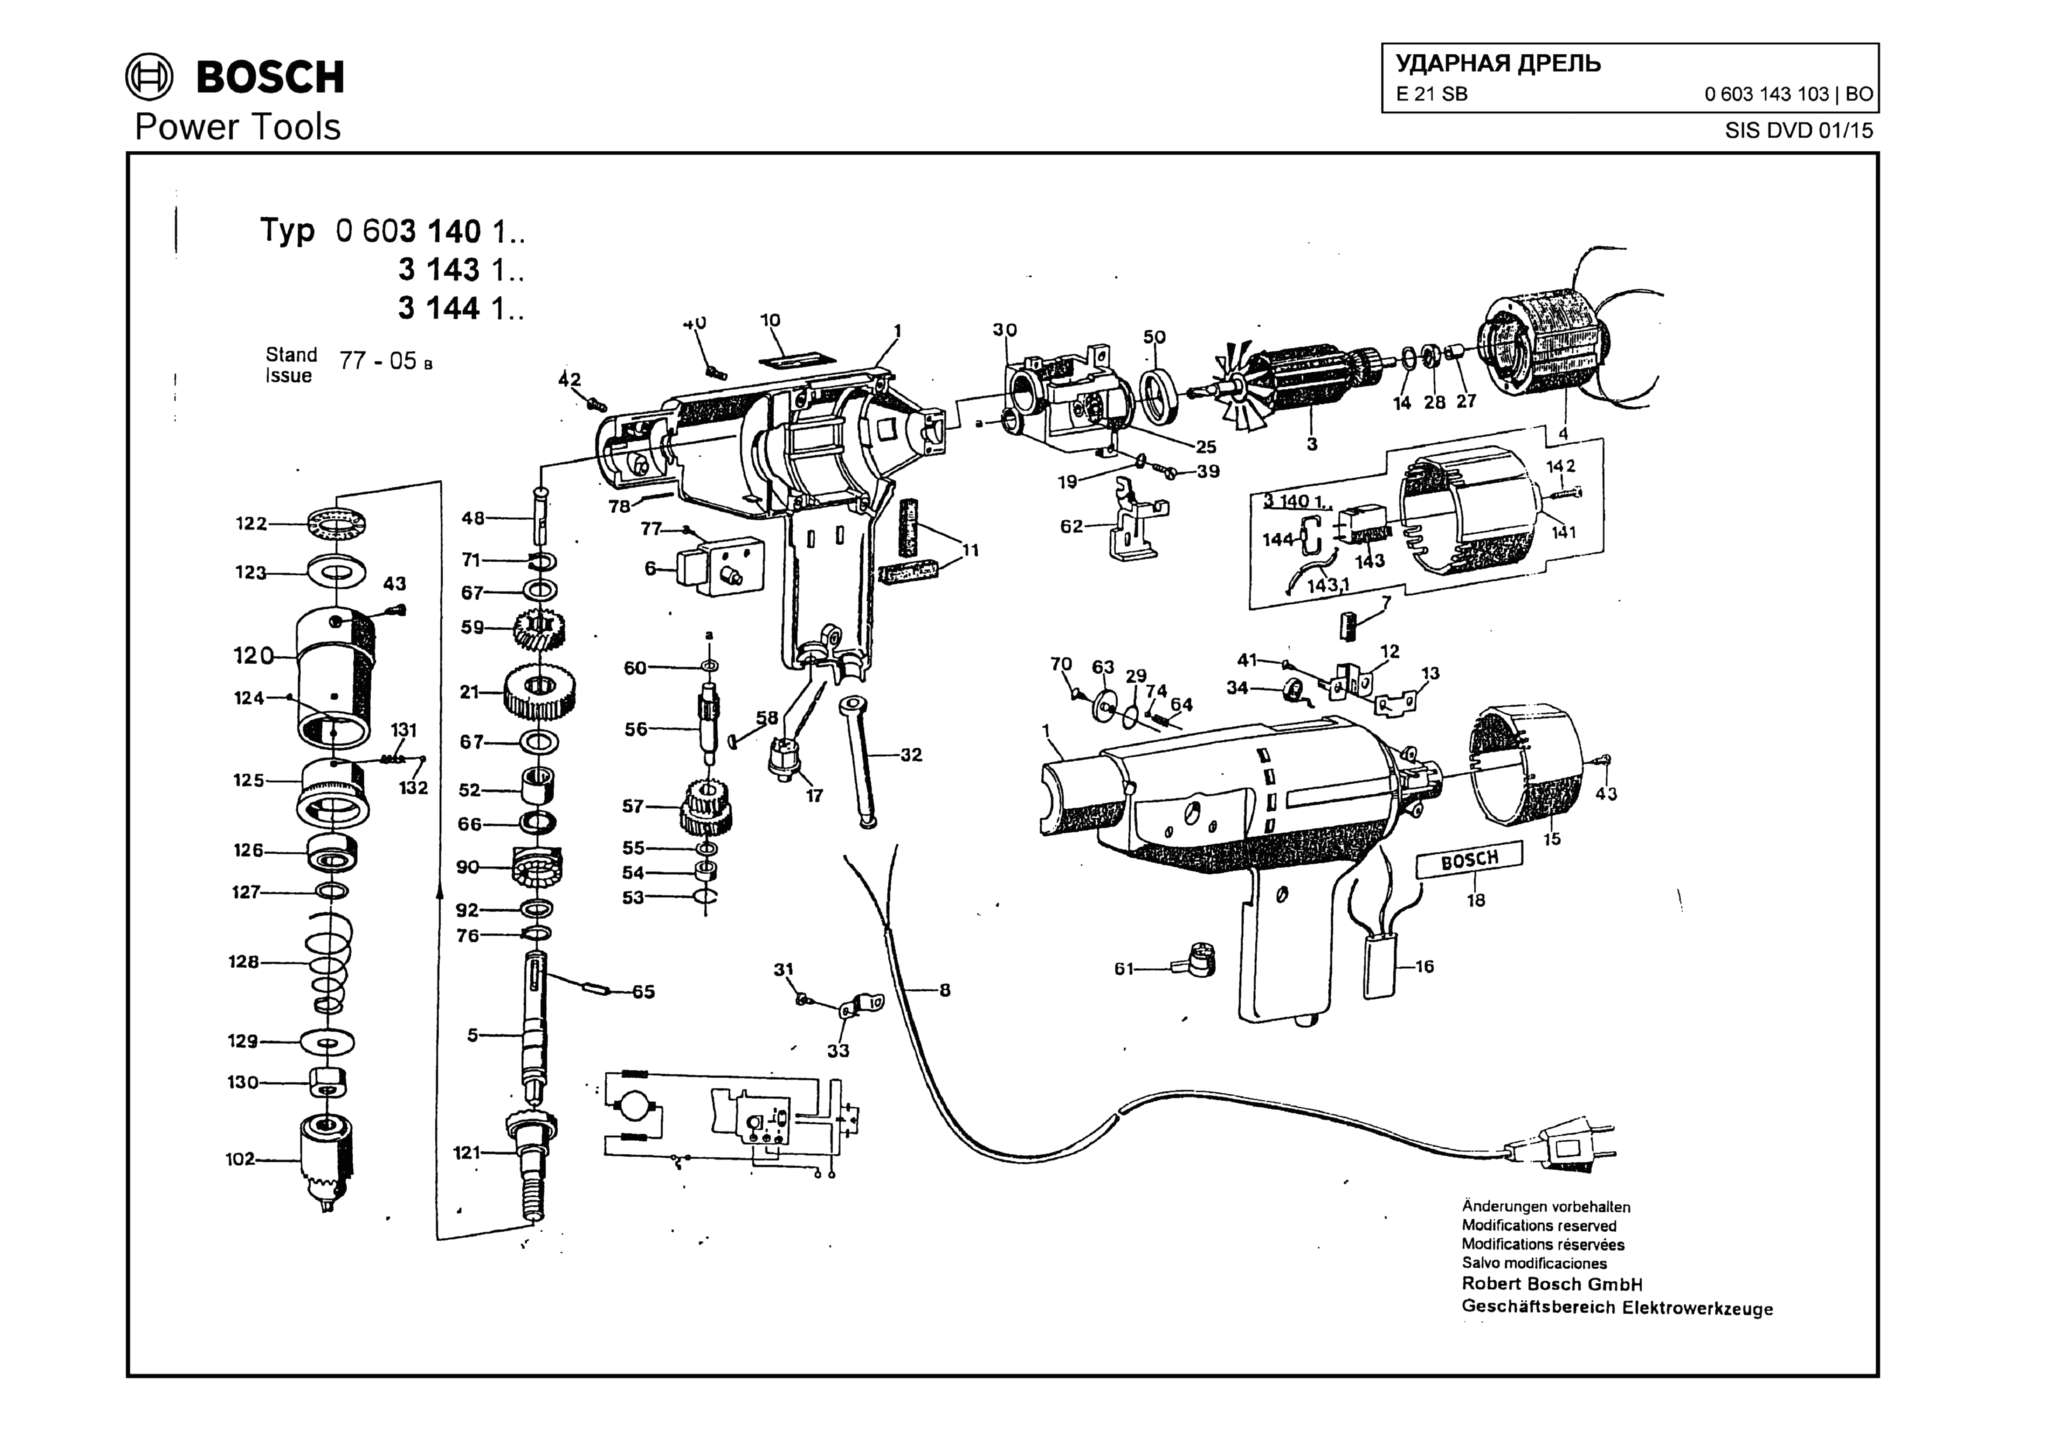 Запчасти, схема и деталировка Bosch E 21 SB (ТИП 0603143103)